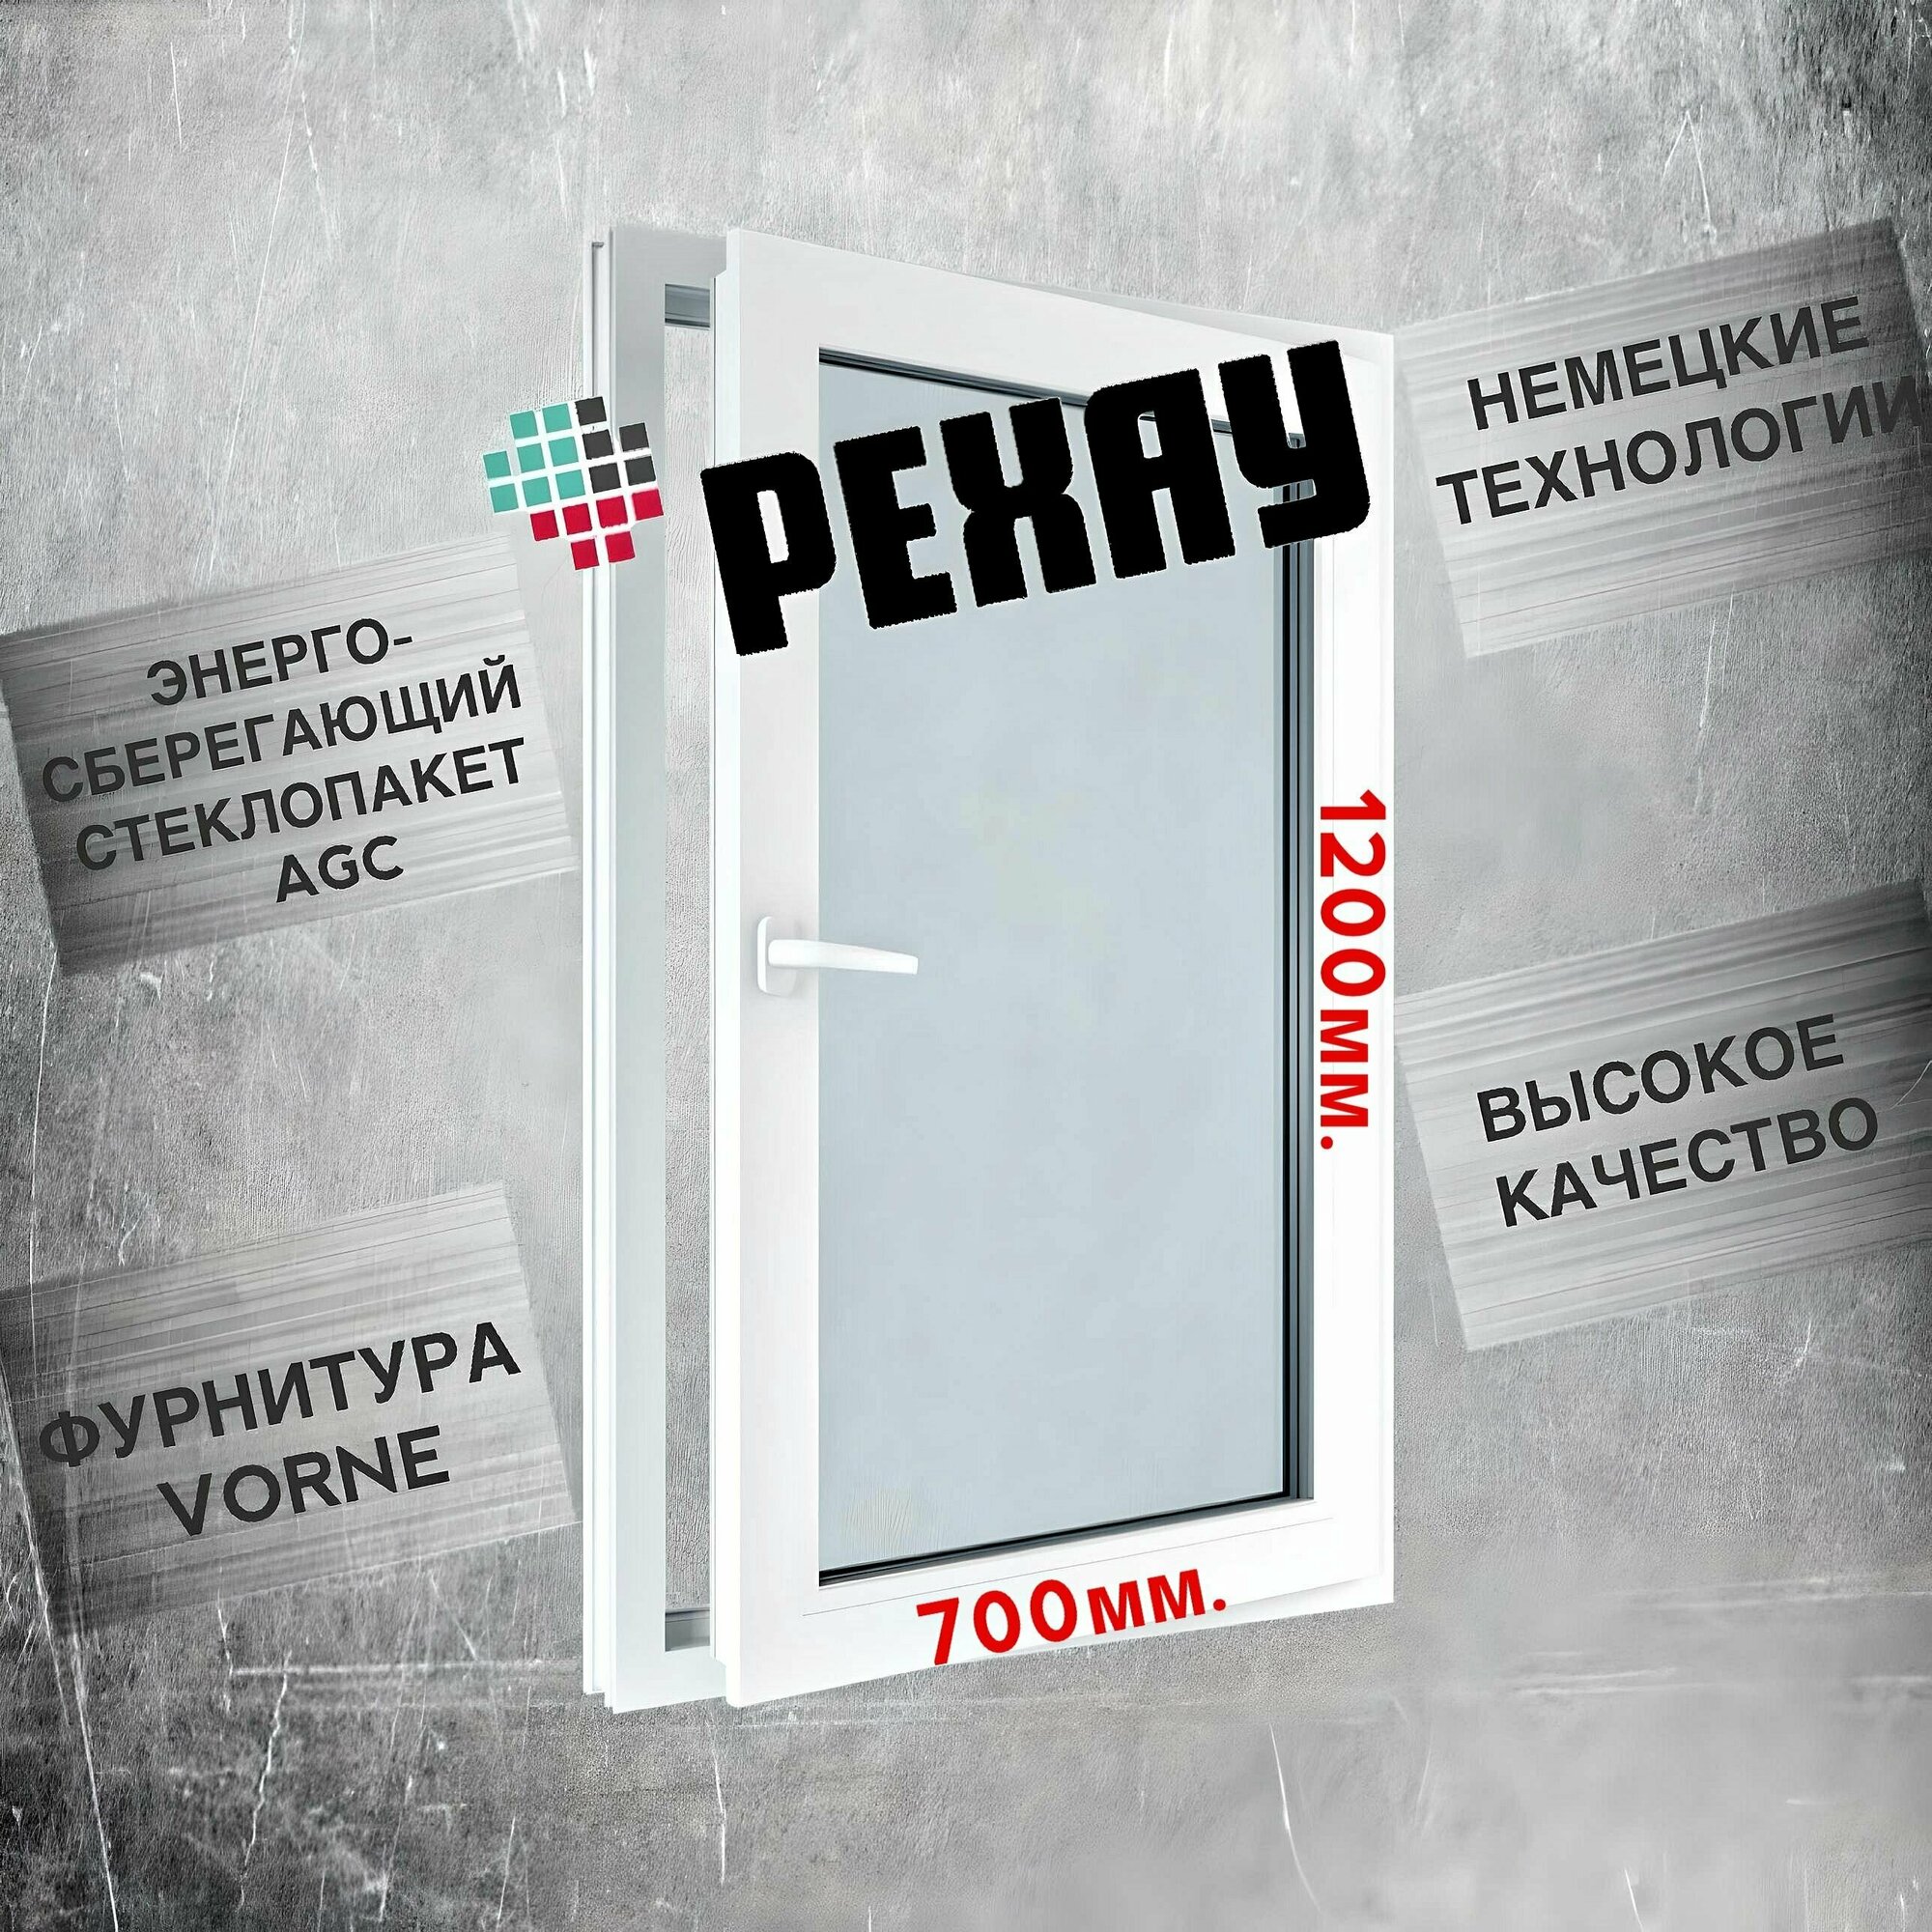 Окно РЕХАУ (1200х700)мм, одностворчатое, поворотно-откидное, правое, энергосберегающий стеклопакет, фурнитура VORNE.